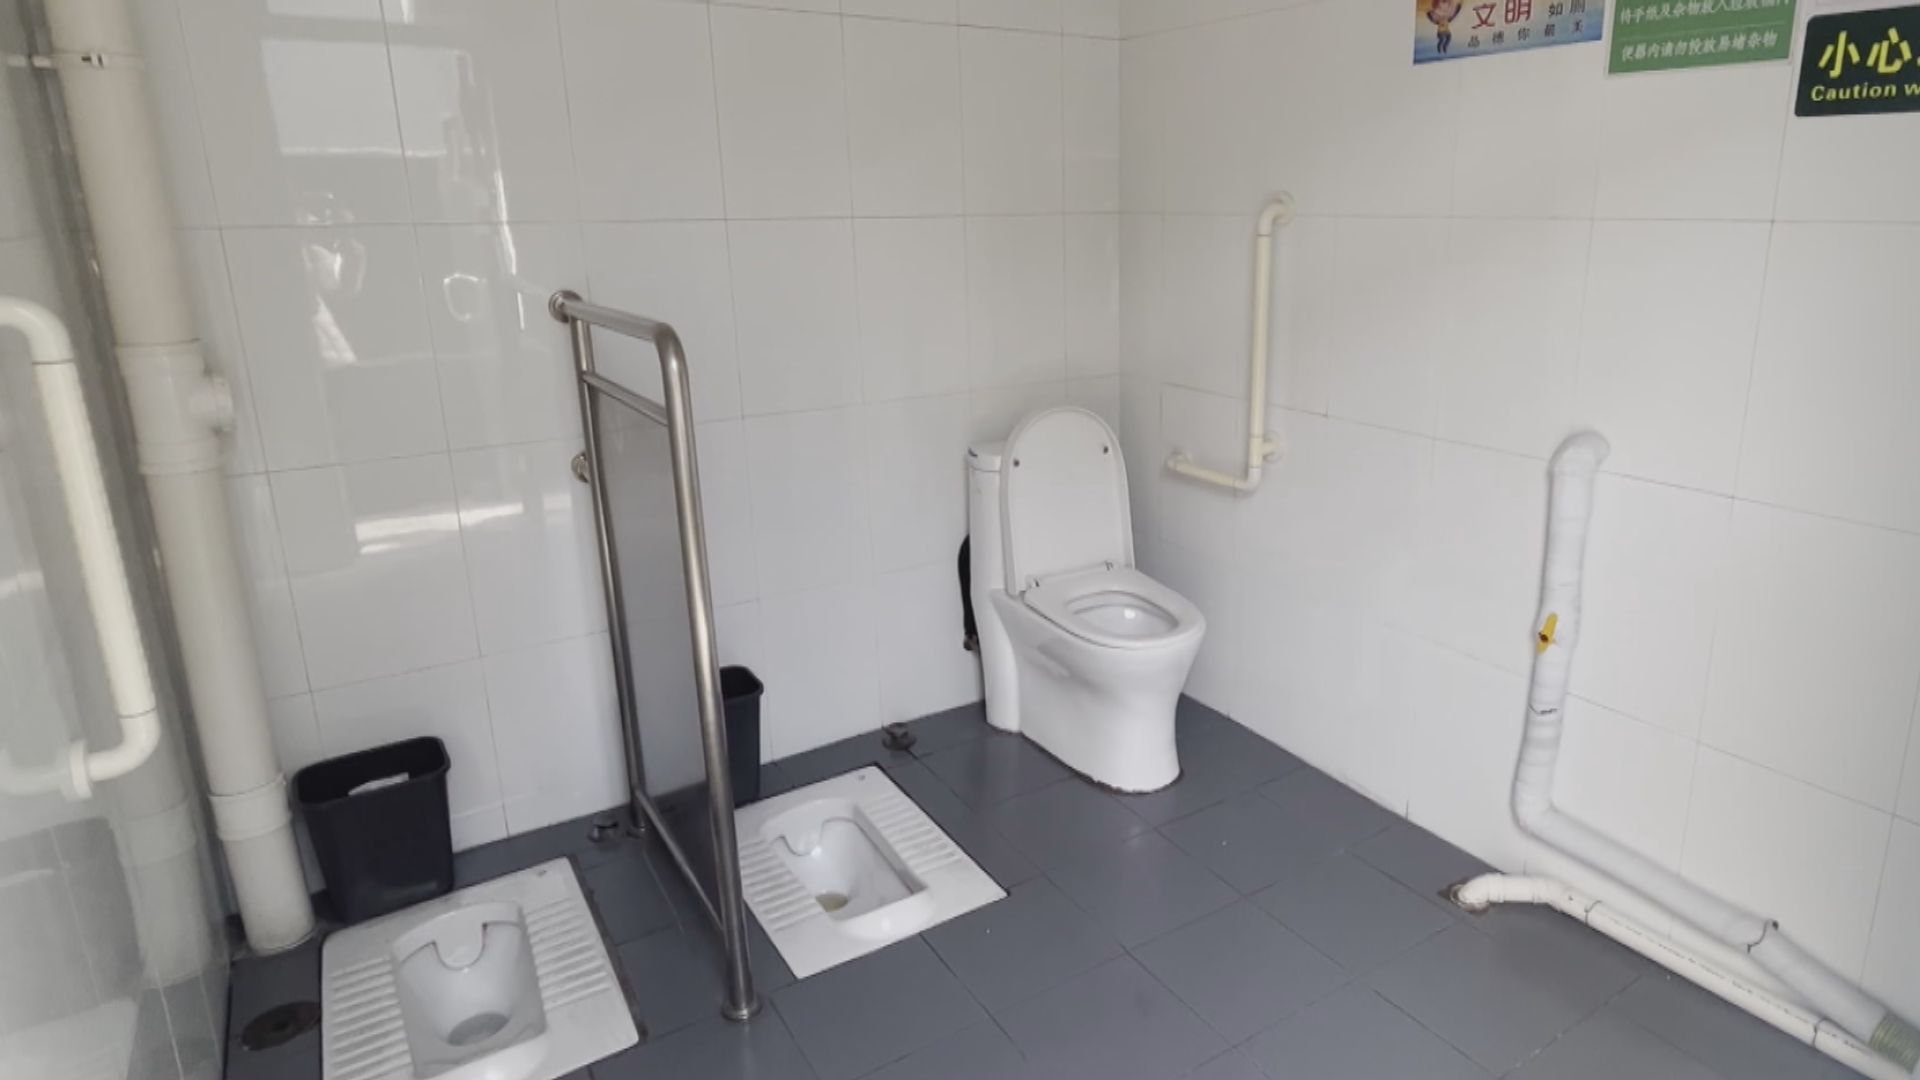 【首都專線】北京開放式公廁 遊客如廁感尷尬